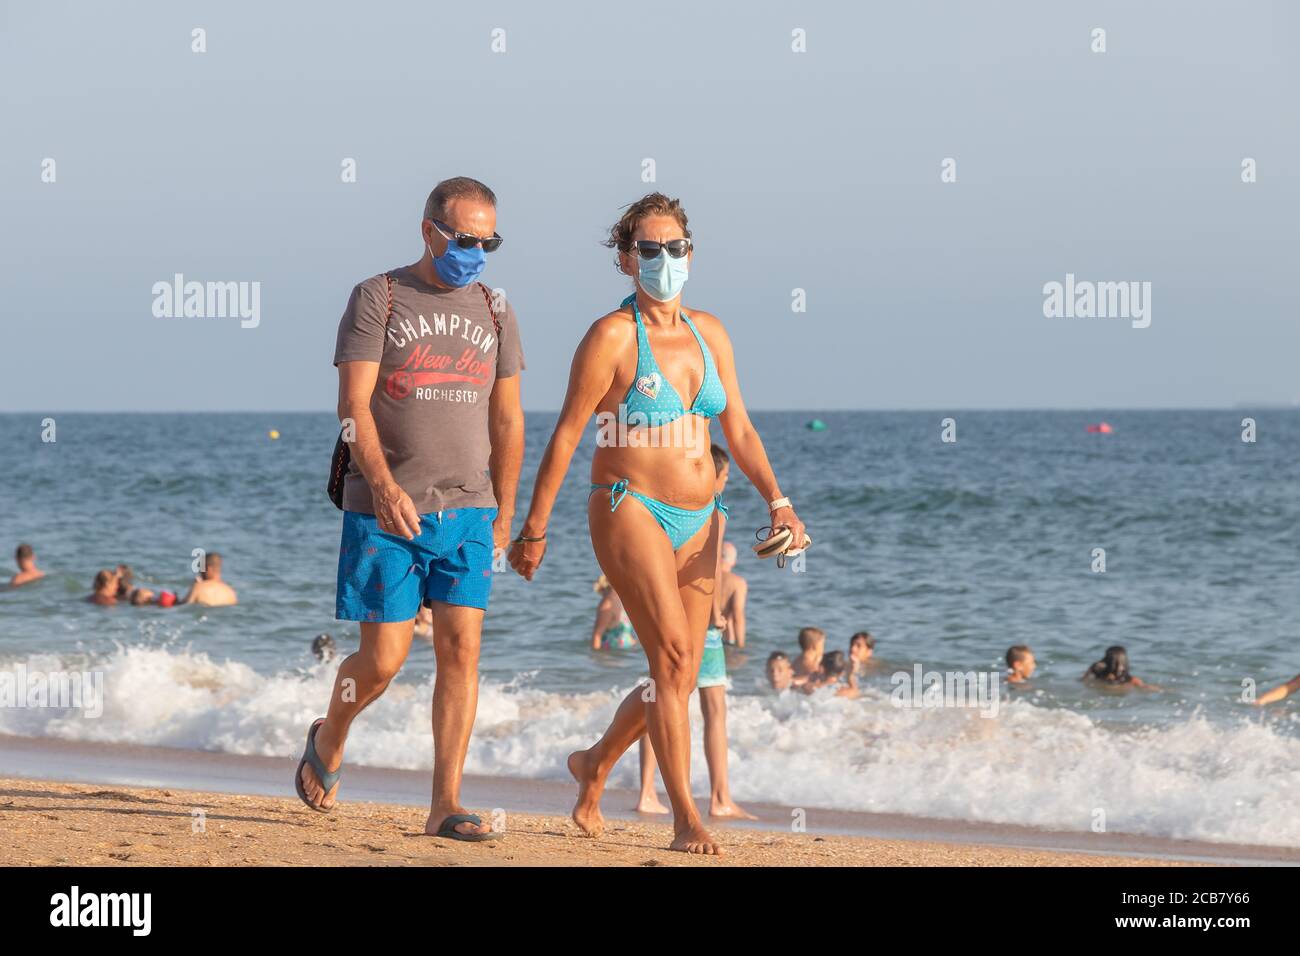 Punta Umbria, Huelva, Spanien - 7. August 2020: Paar, das am Strand entlang geht und Schutzmasken oder medizinische Gesichtsmasken trägt. Neue Normalität in Spanien mit sozialen di Stockfoto